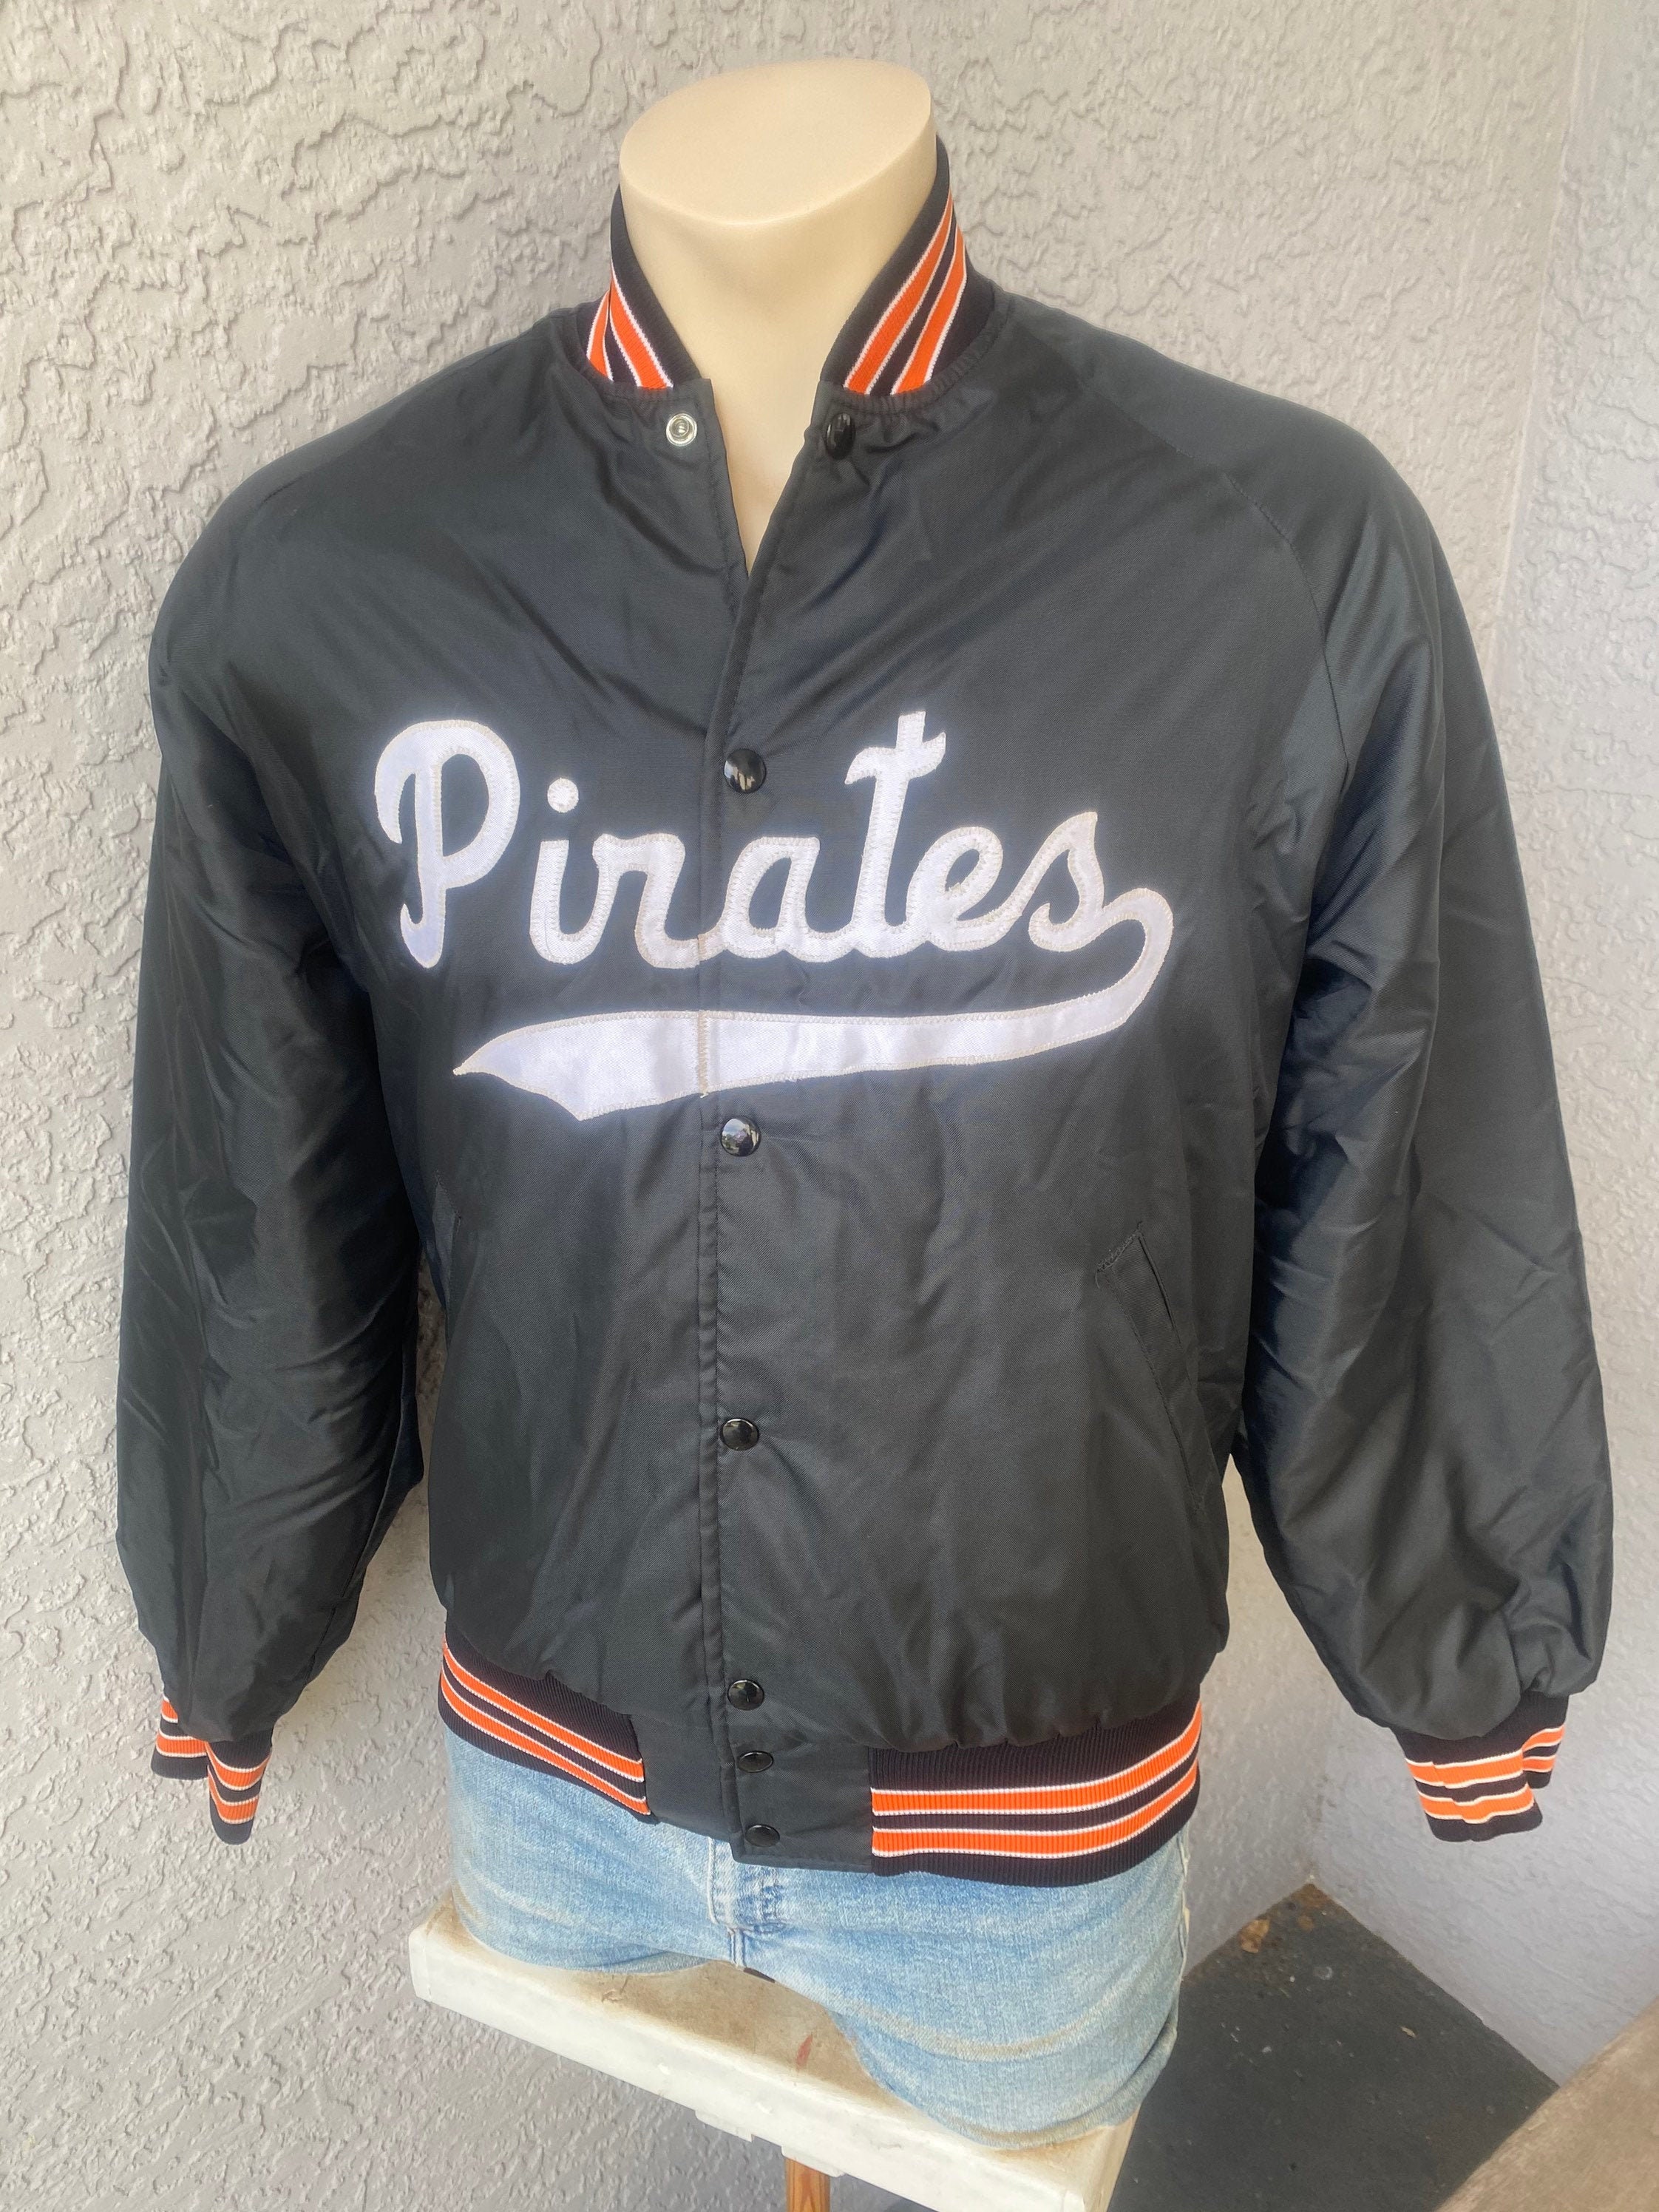 Pirates 1980s Vintage Nylon Jacket With Lining Black Orange 